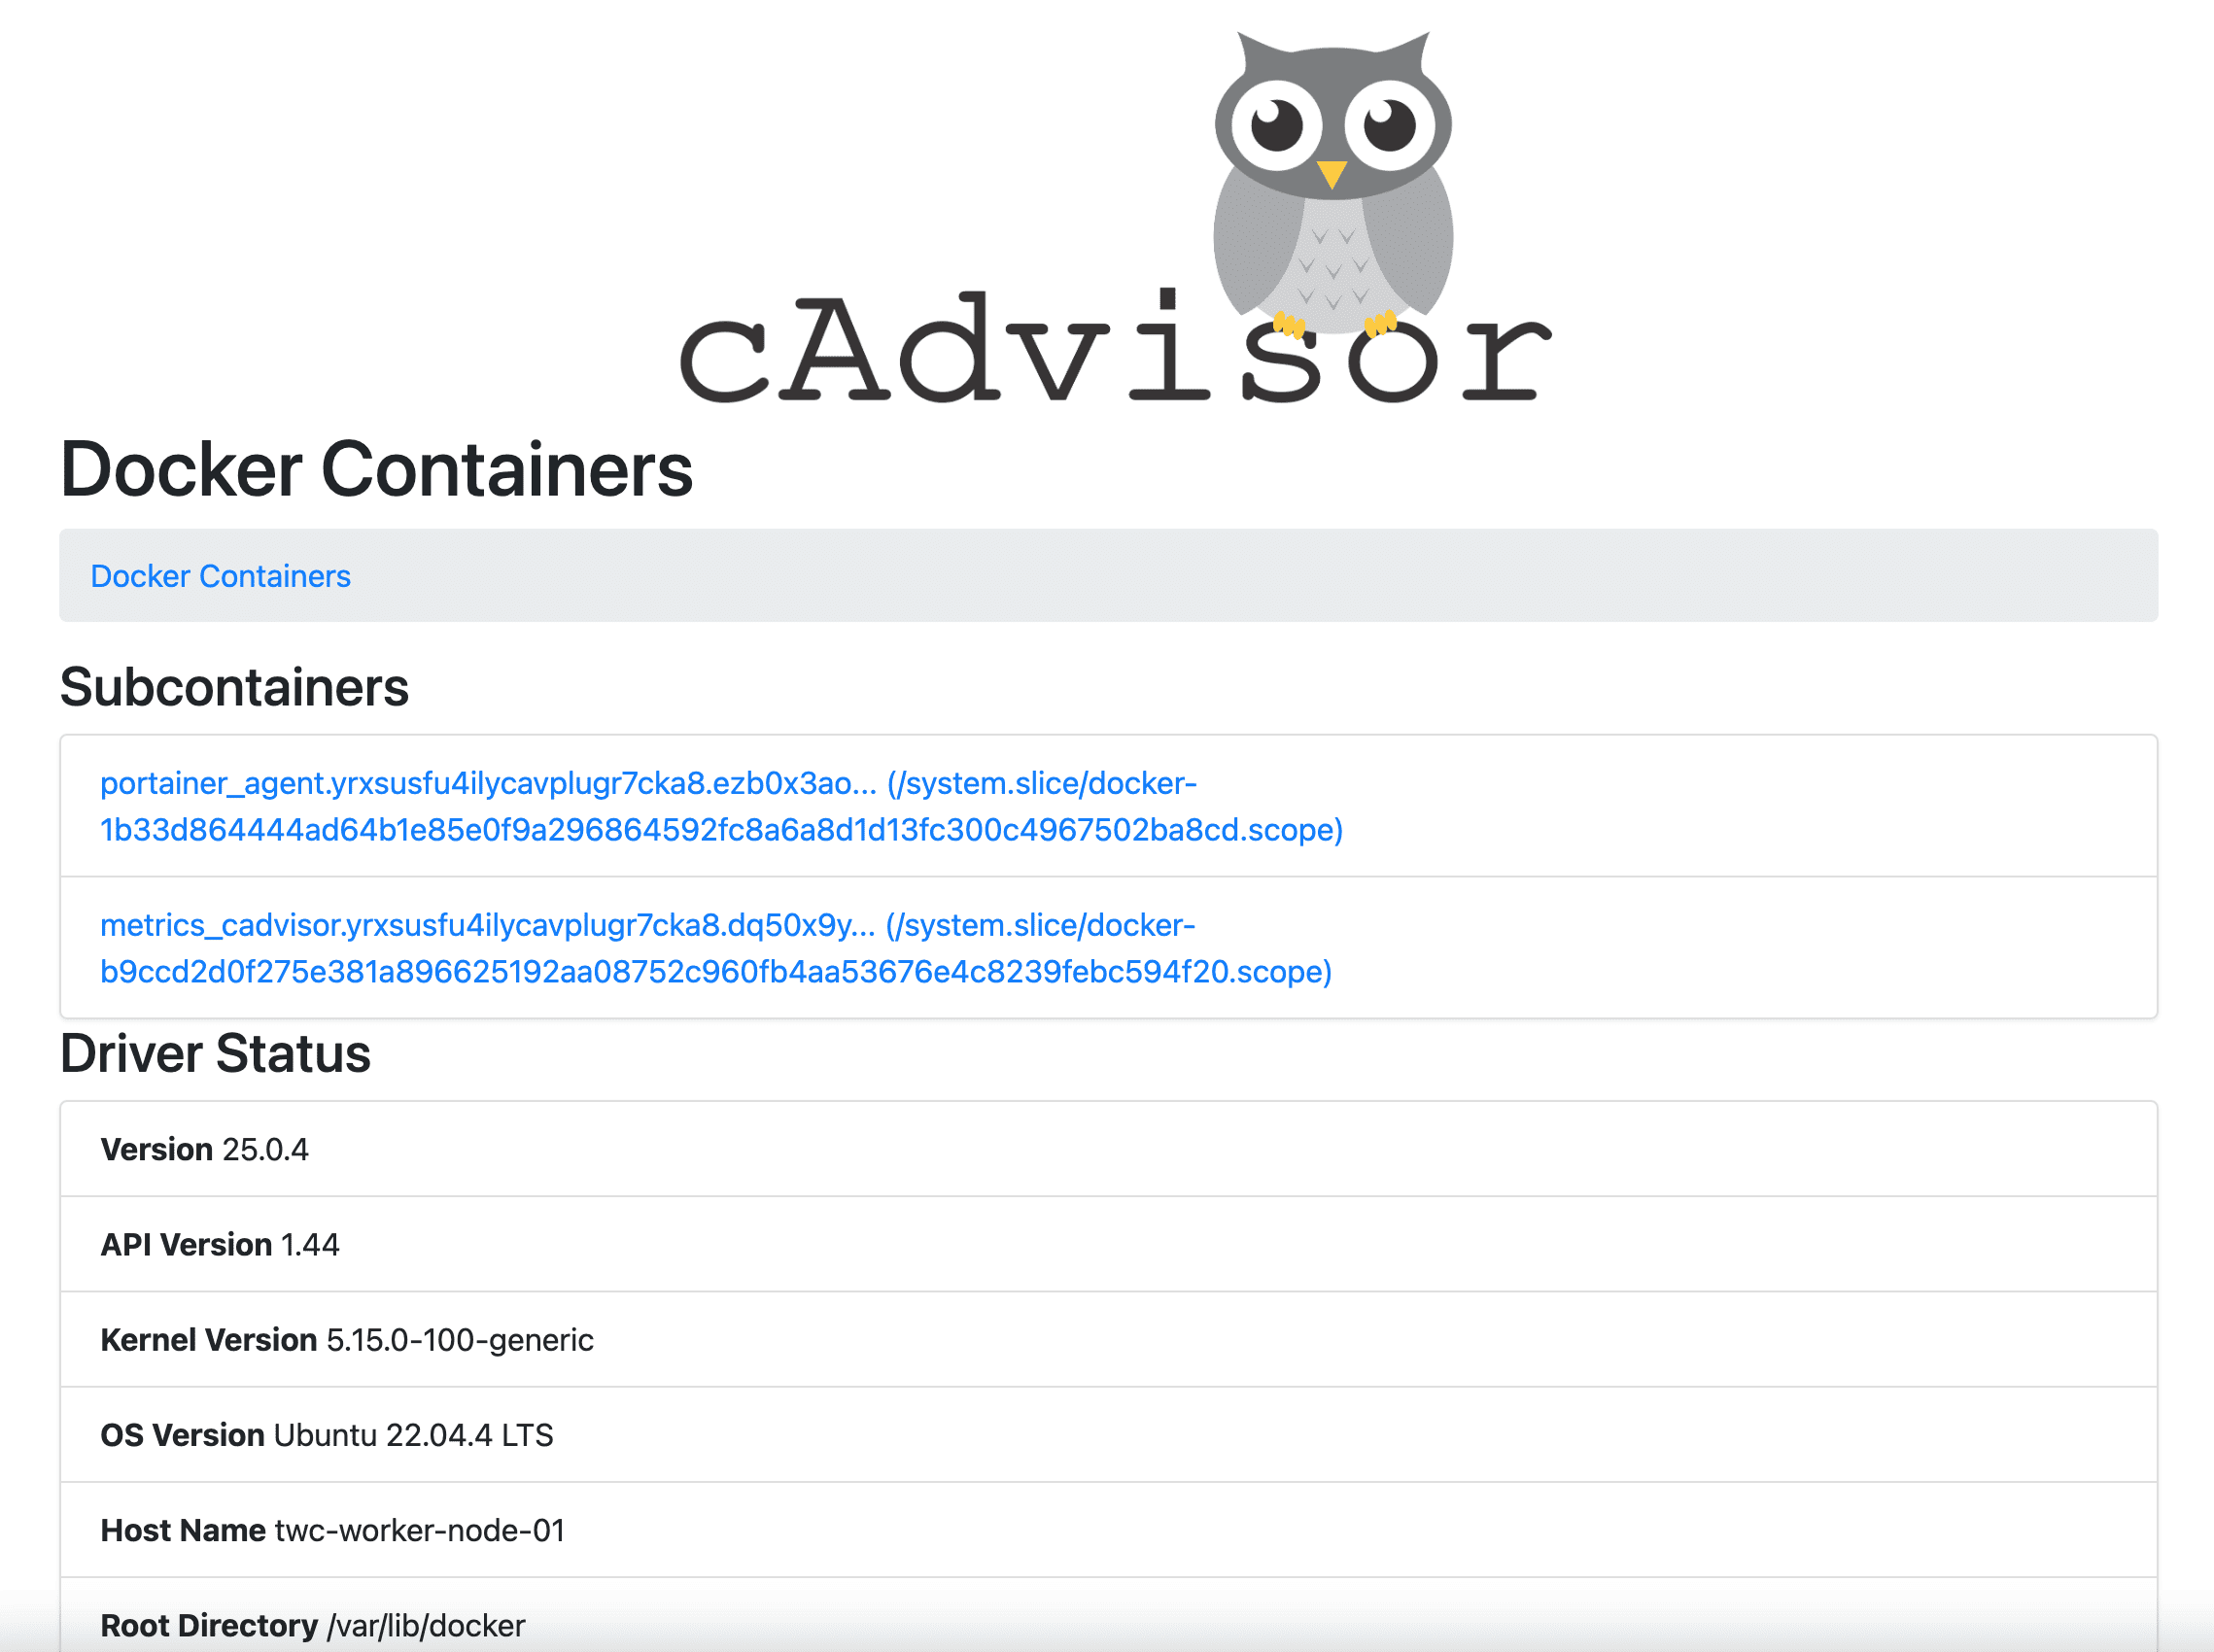 cadvisor, docker swarm, cadvisor docker containers